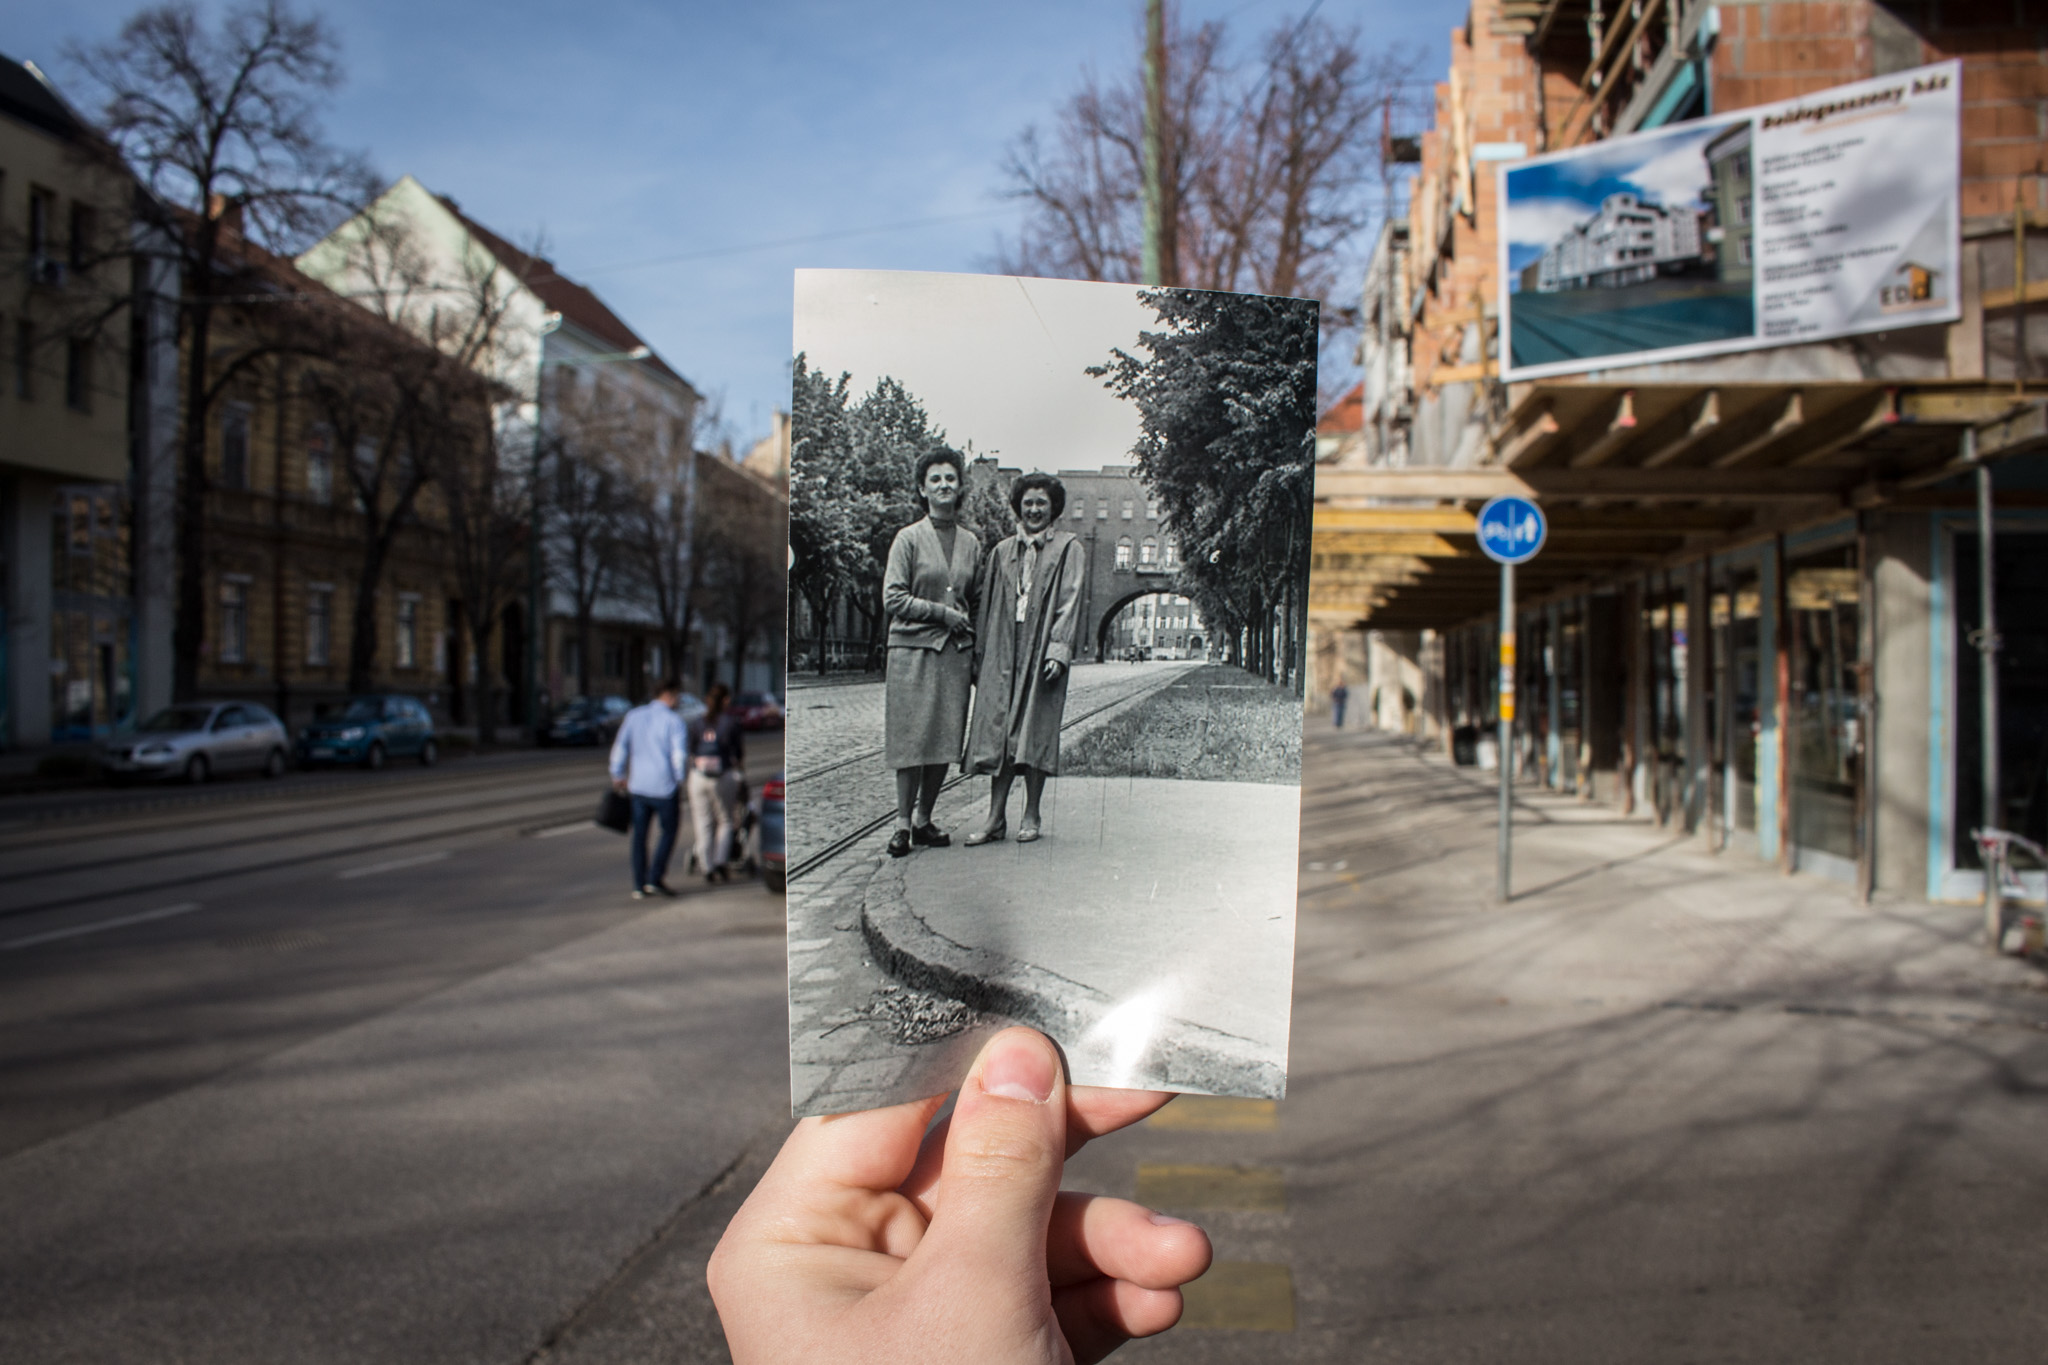 Akkor és most: így változott Szeged az utóbbi száz évben